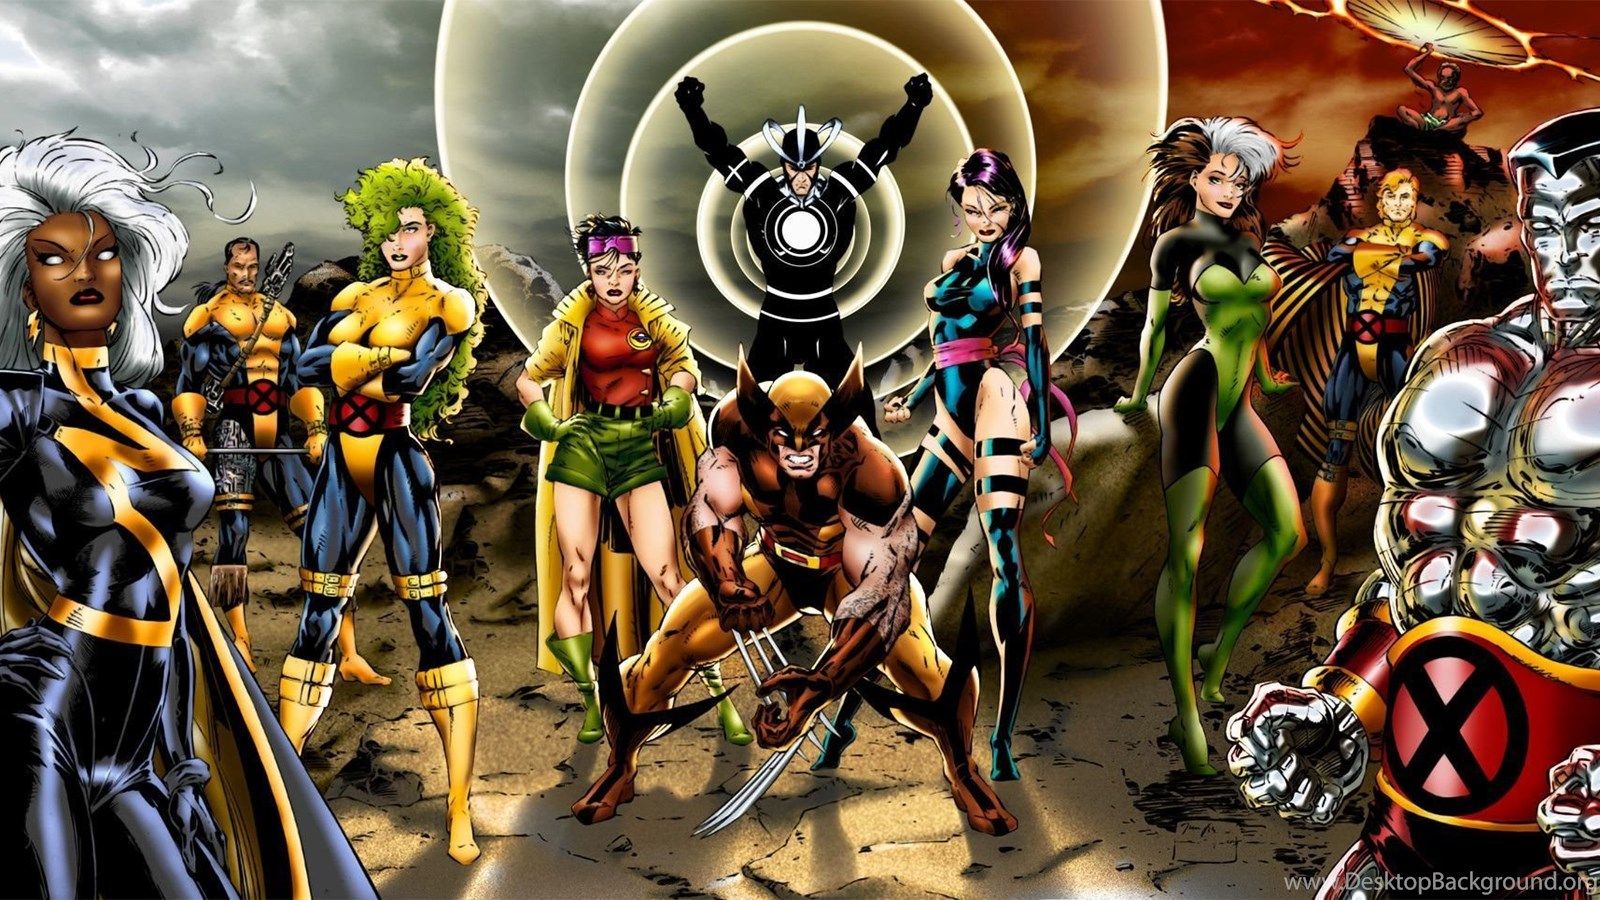 Best Image Gallery For X Men Comics Wallpaper HD Wallpaper. Desktop Background